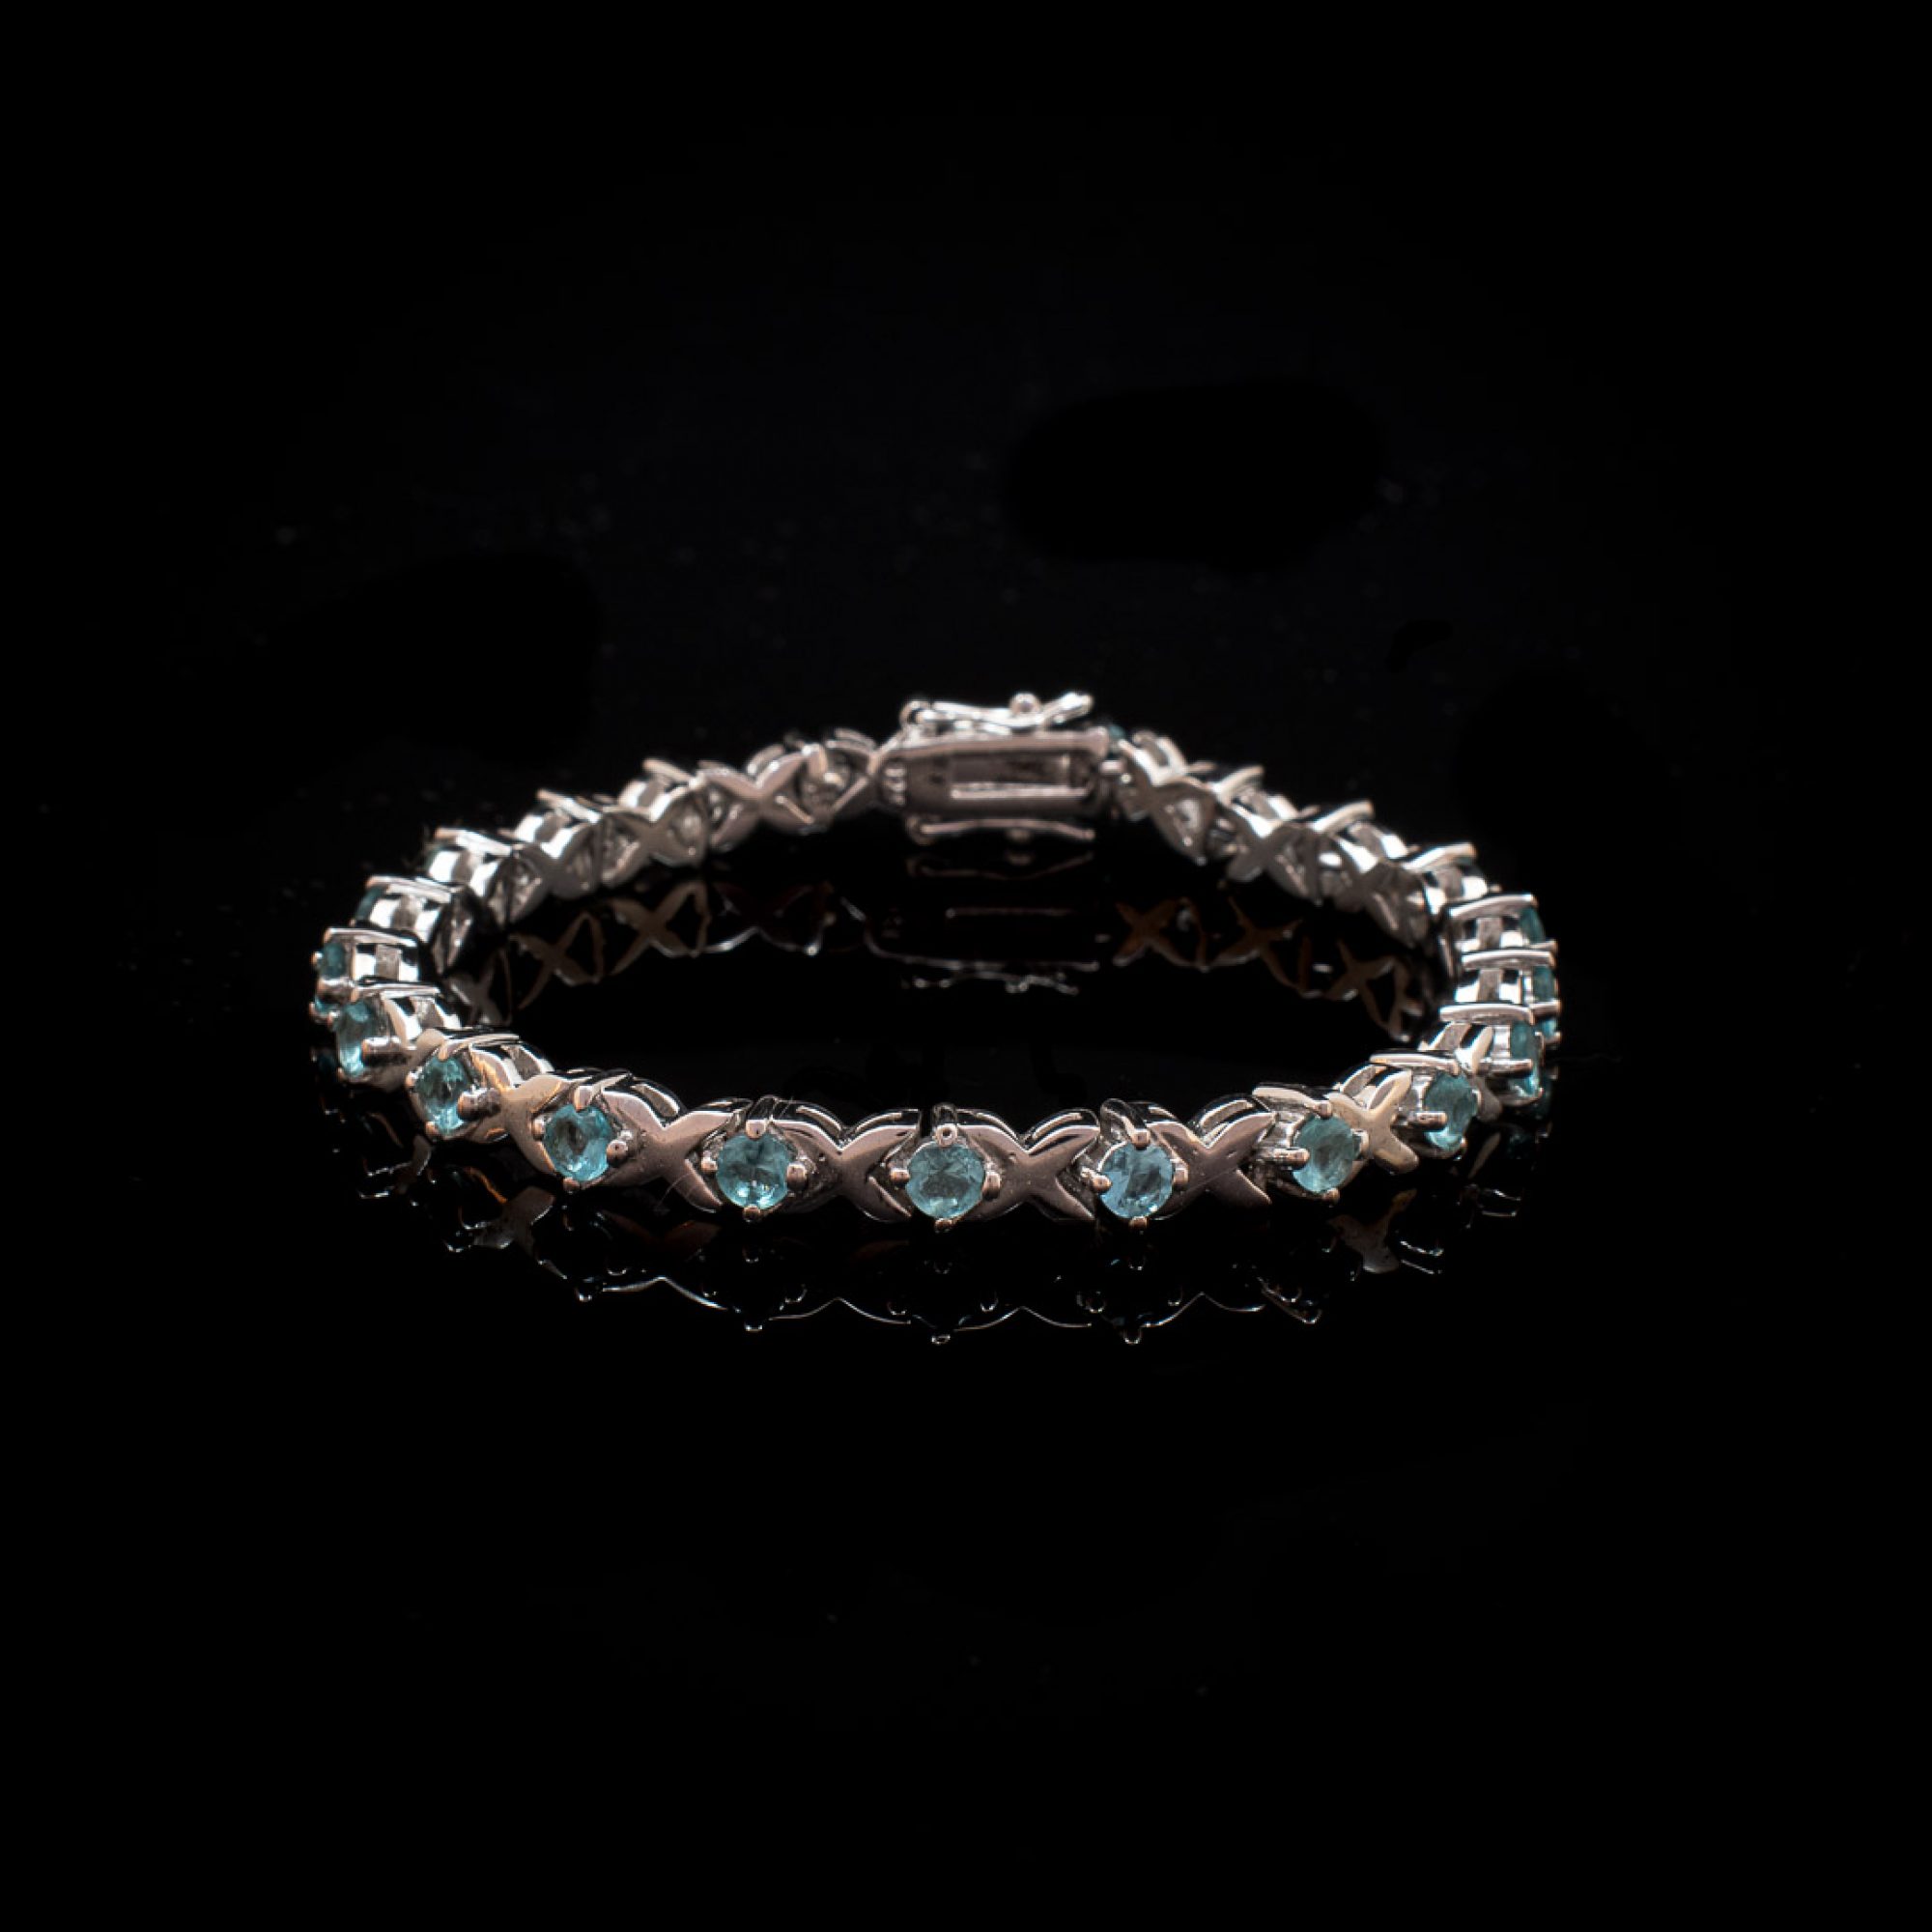 Tennis bracelet with aquamarine stones